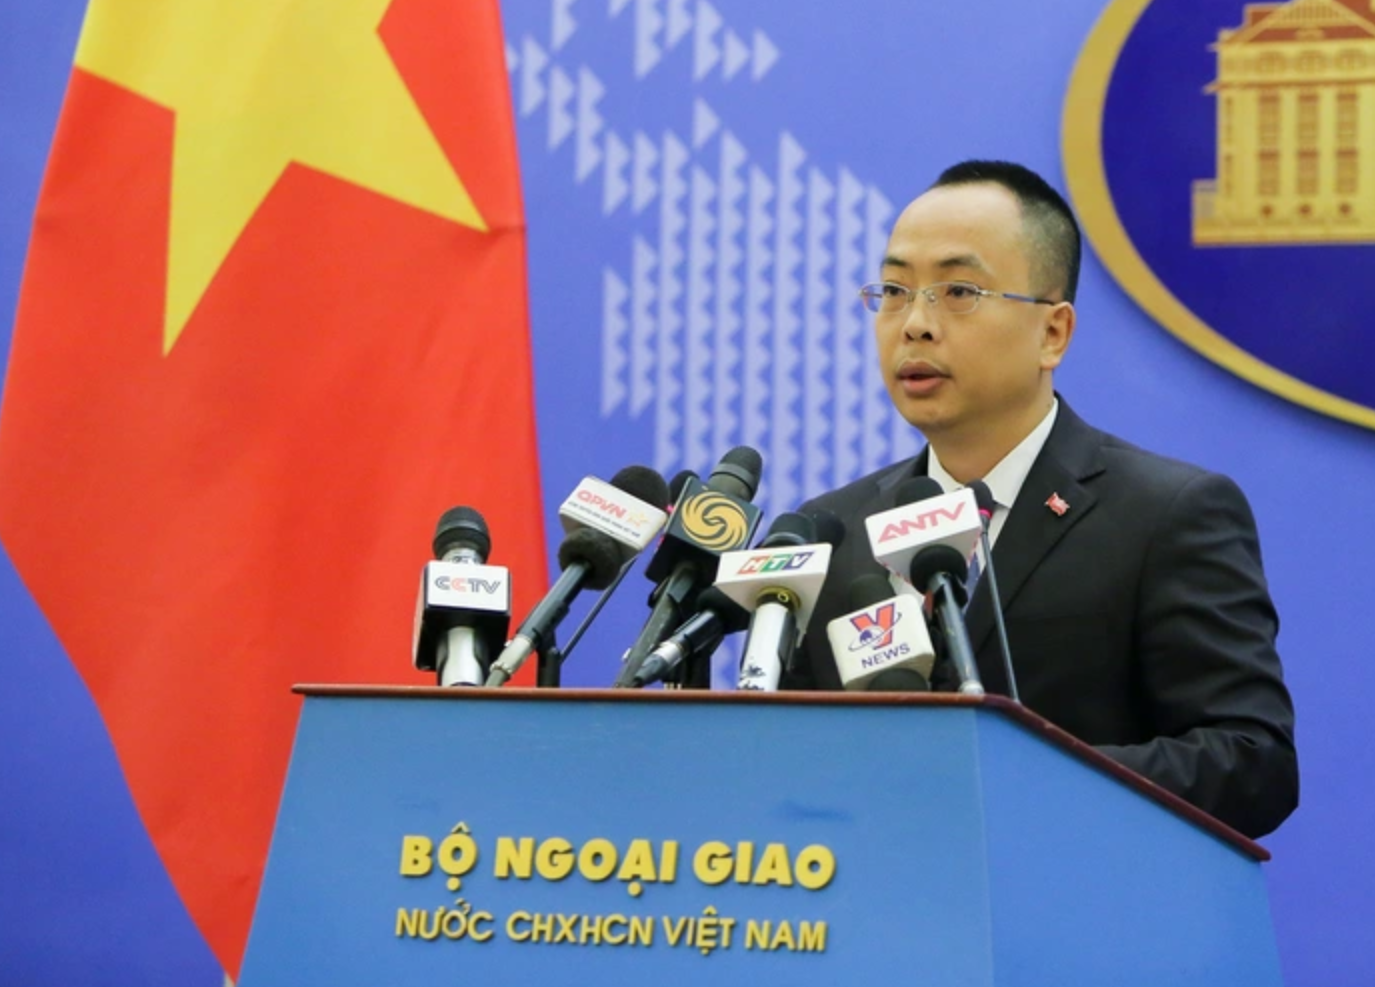 Bộ Ngoại giao: Thất vọng vì báo cáo của các cơ quan LHQ tại Việt Nam có nhiều nội dung sai sự thật- Ảnh 1.